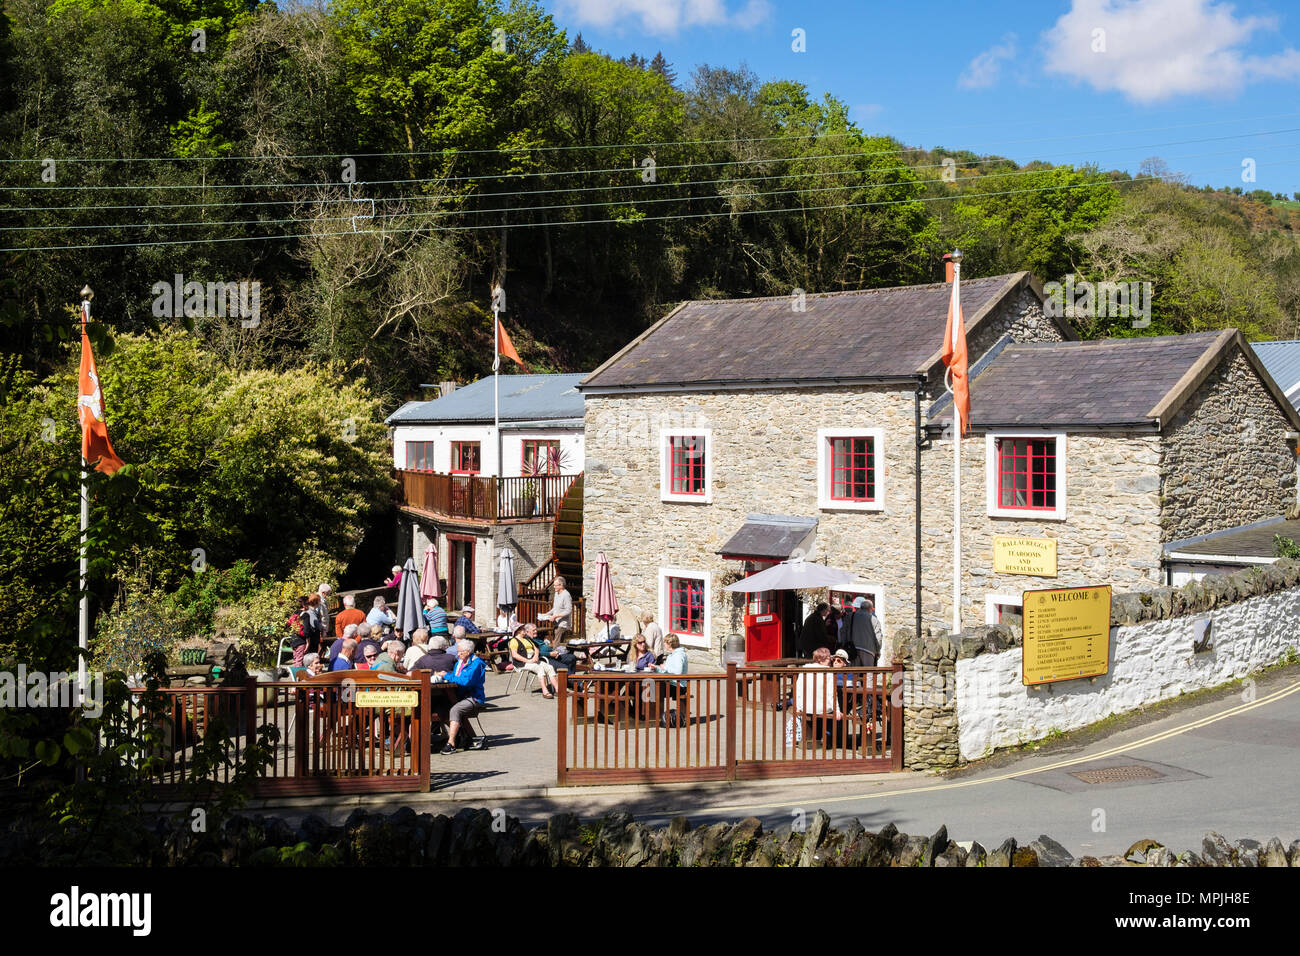 Ballacregga Corn Mill sala da tè e caffè con gente seduta fuori a godersi il sole. Salmone Centro Lago, Laxey, Isola di Man e Isole britanniche Foto Stock